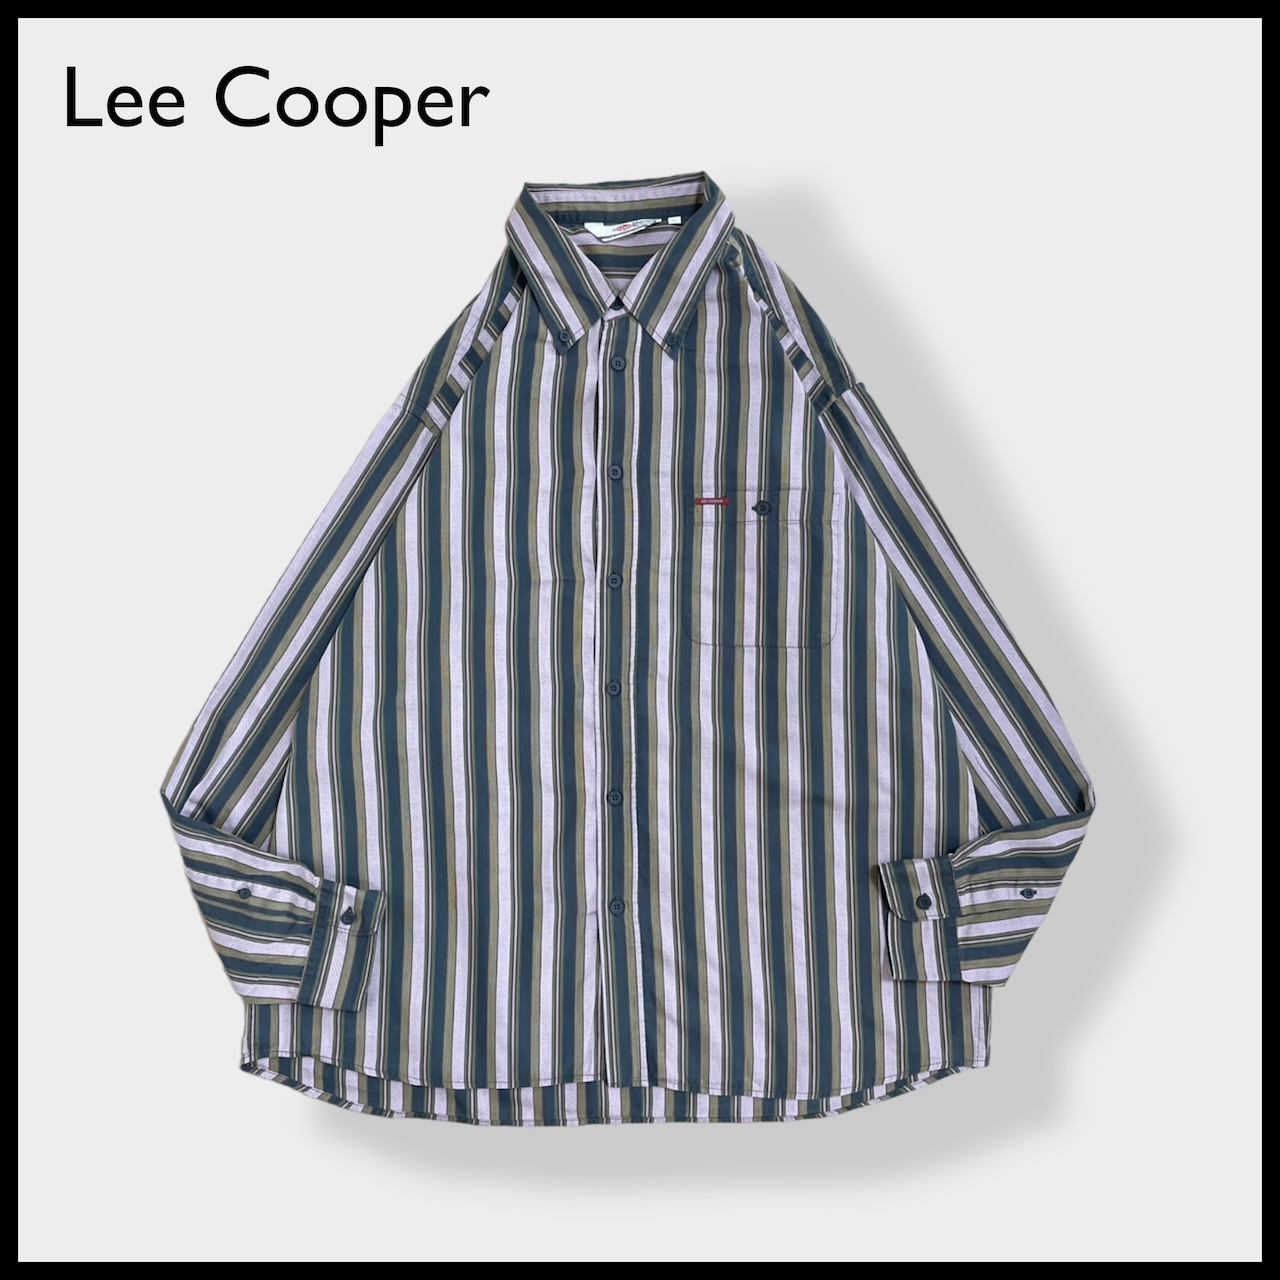 【Lee Cooper】ストライプシャツ 長袖シャツ カジュアルシャツ レトロ 柄シャツ ボタンダウン マルチカラー マルチストライプ XL ビッグサイズ US古着